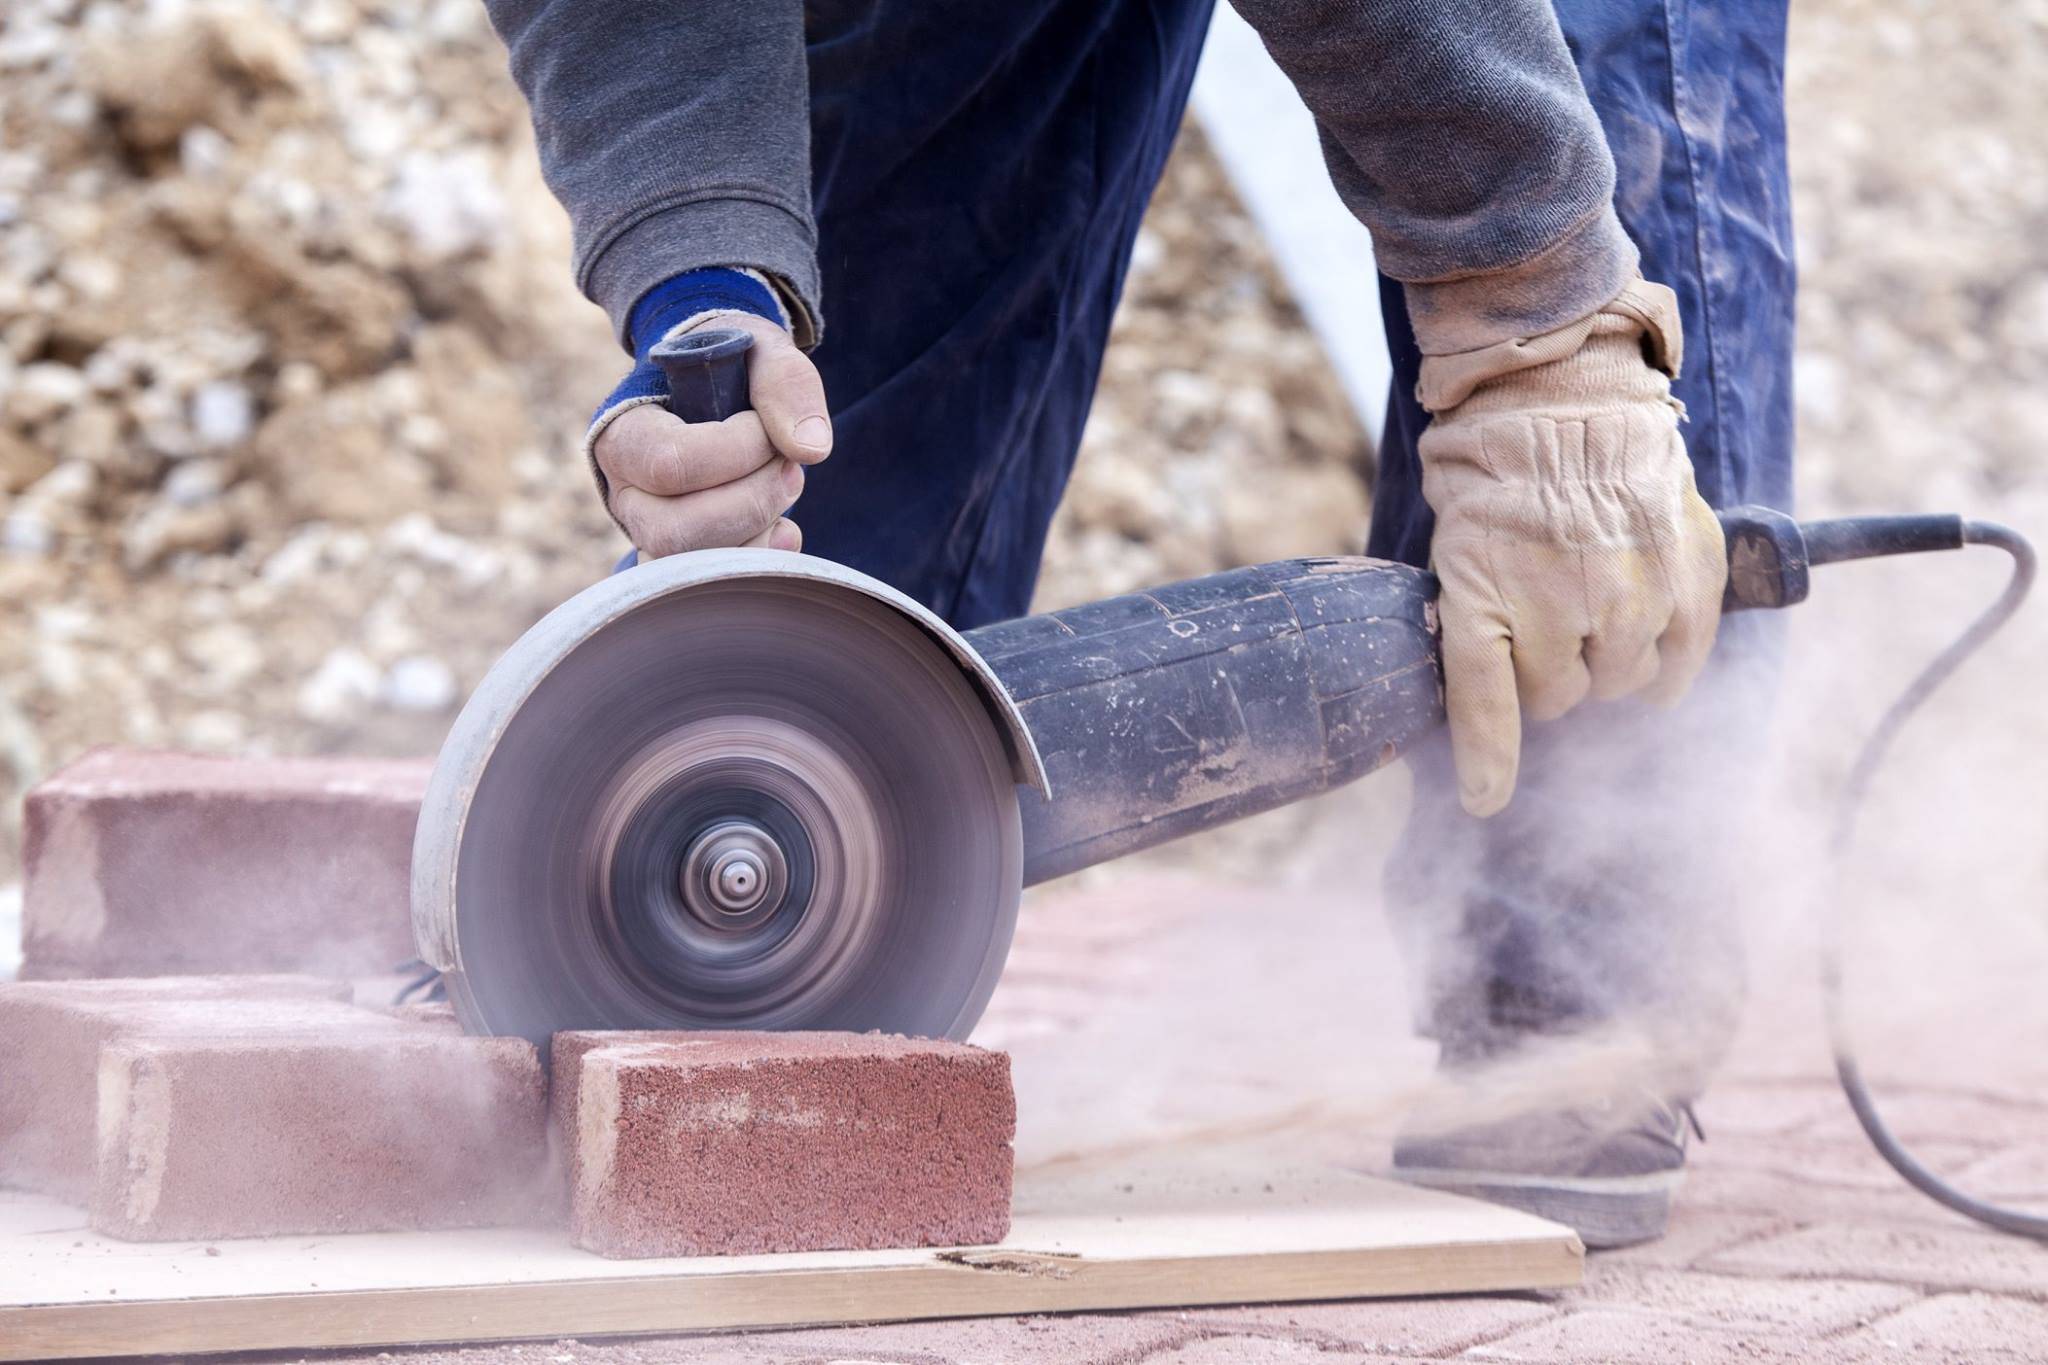 Насадка на болгарку для шлифовки бетона инструмент стройка